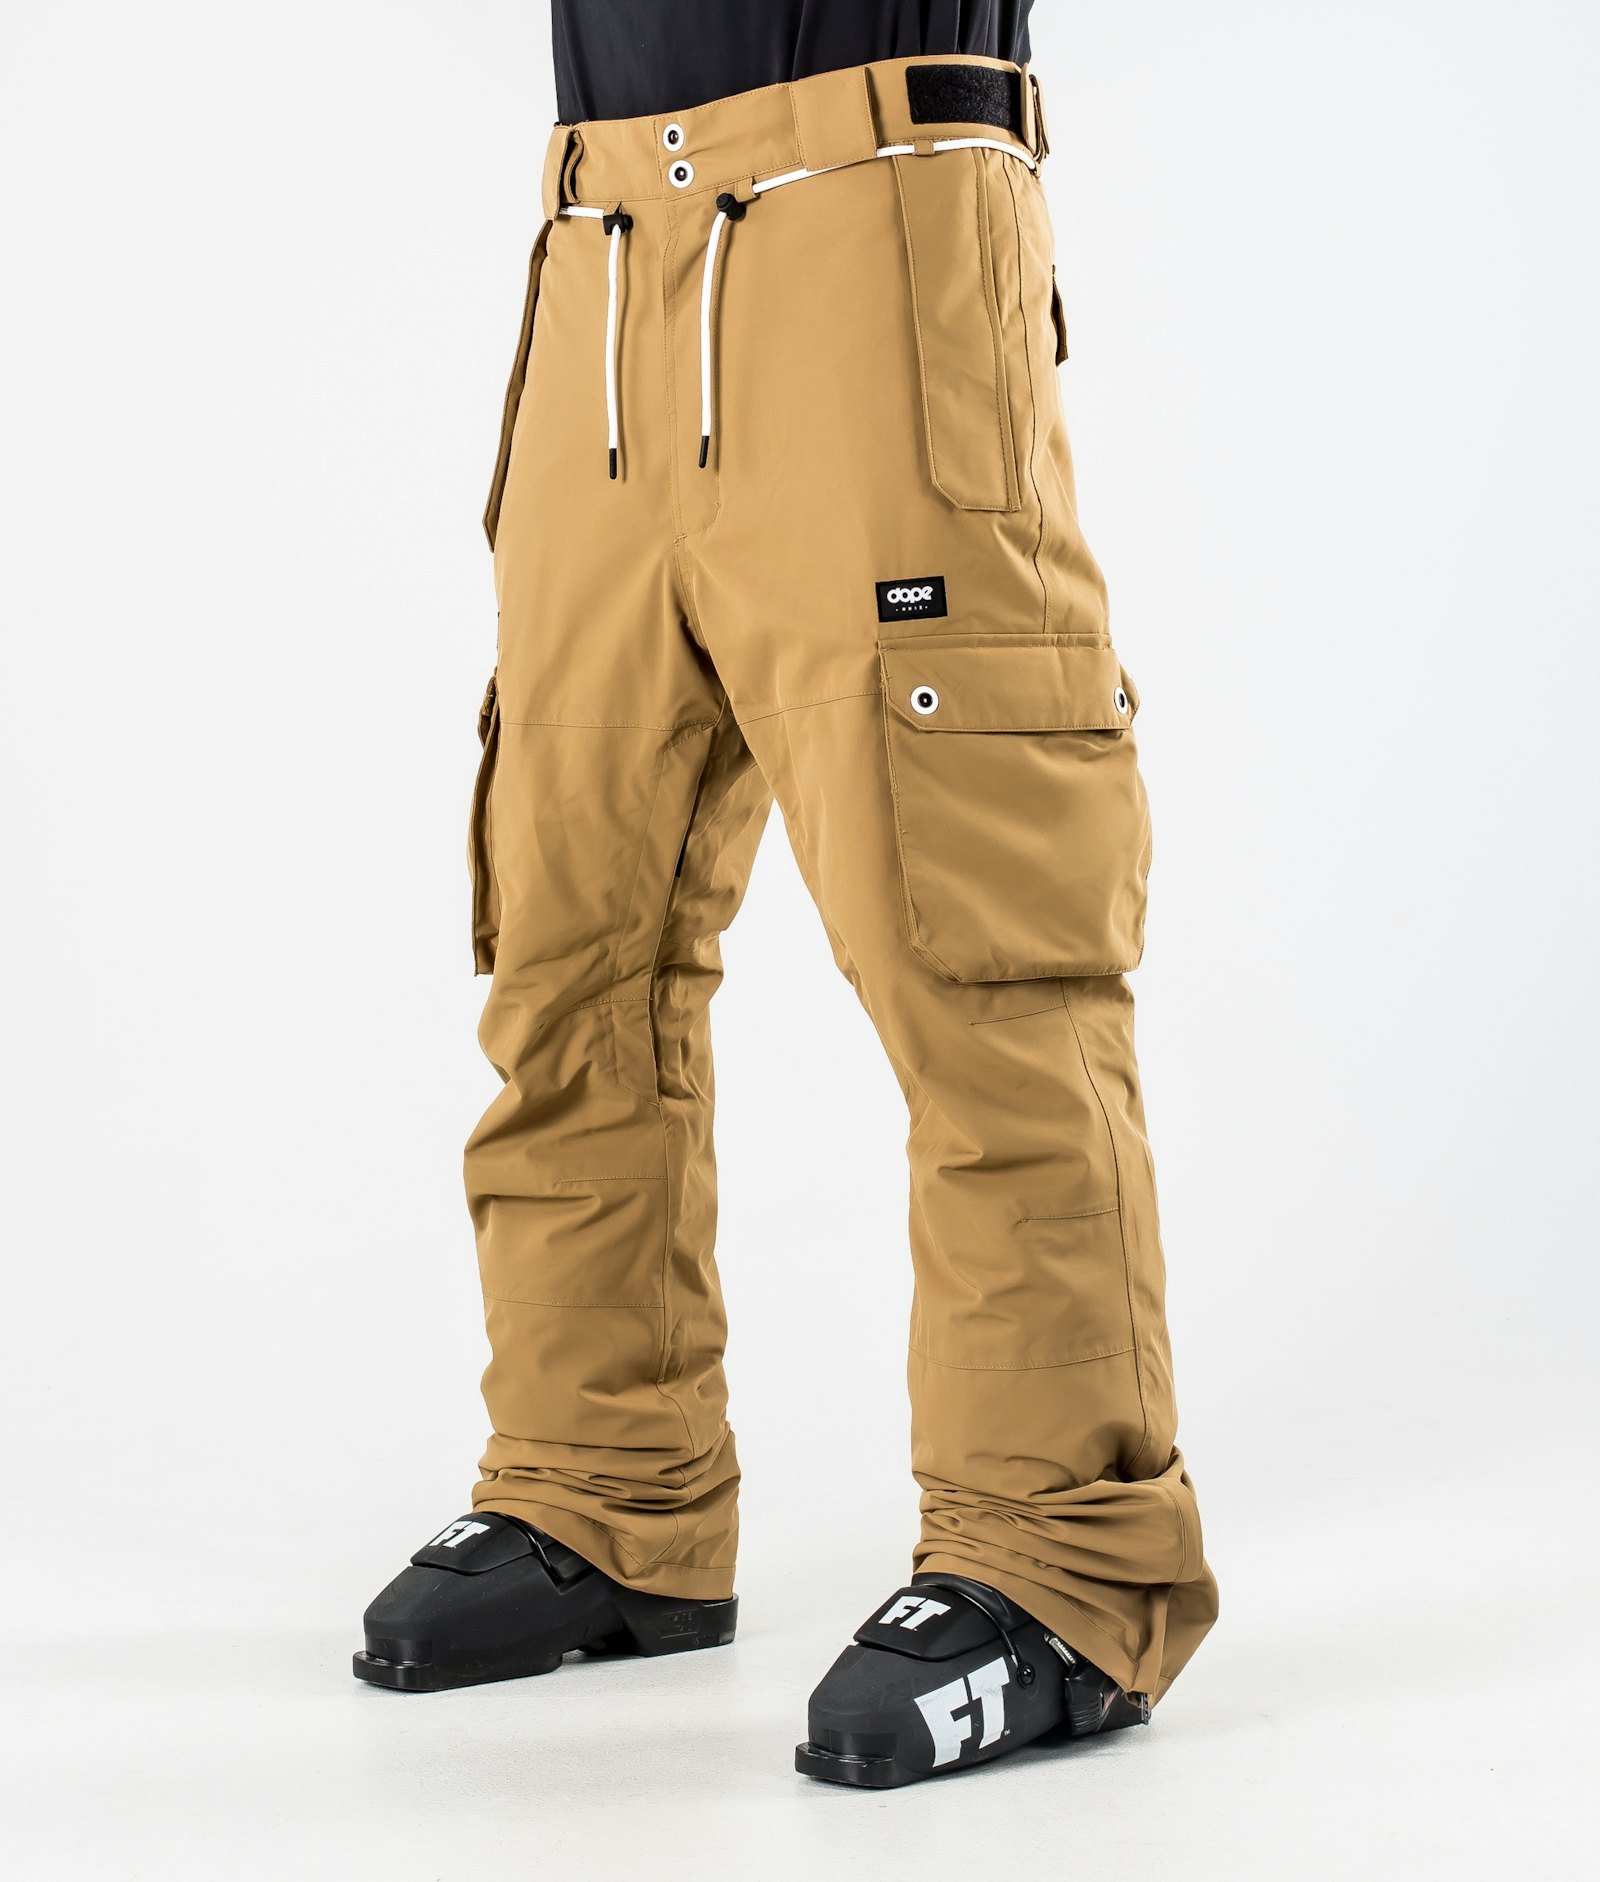 Iconic 2020 Pantalones Esquí Hombre Gold